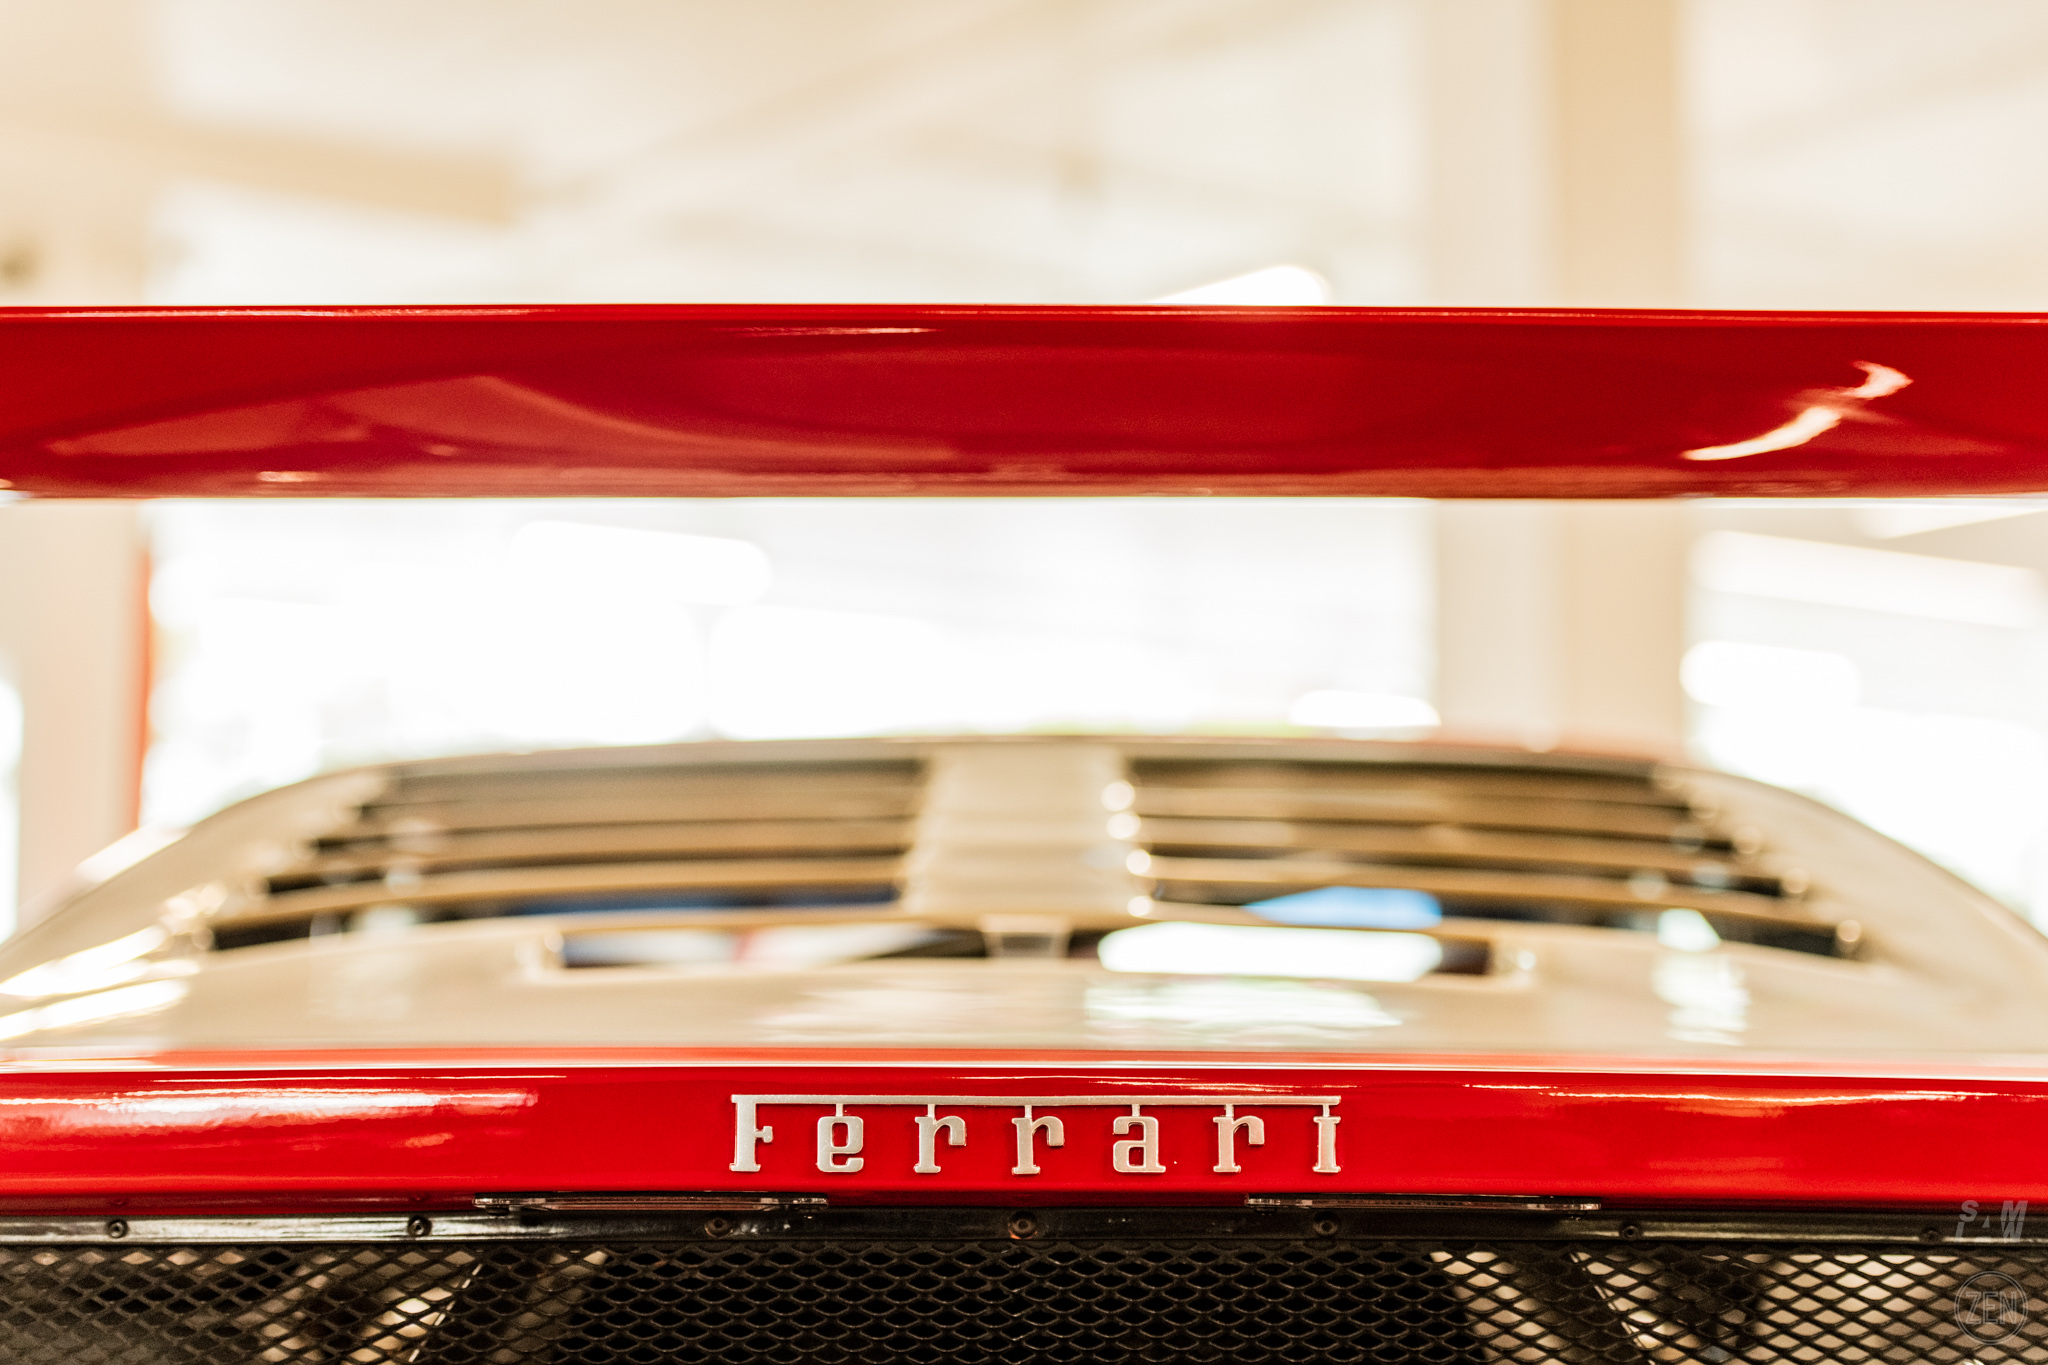 2019-09-21 - Ferrari Concorso 106